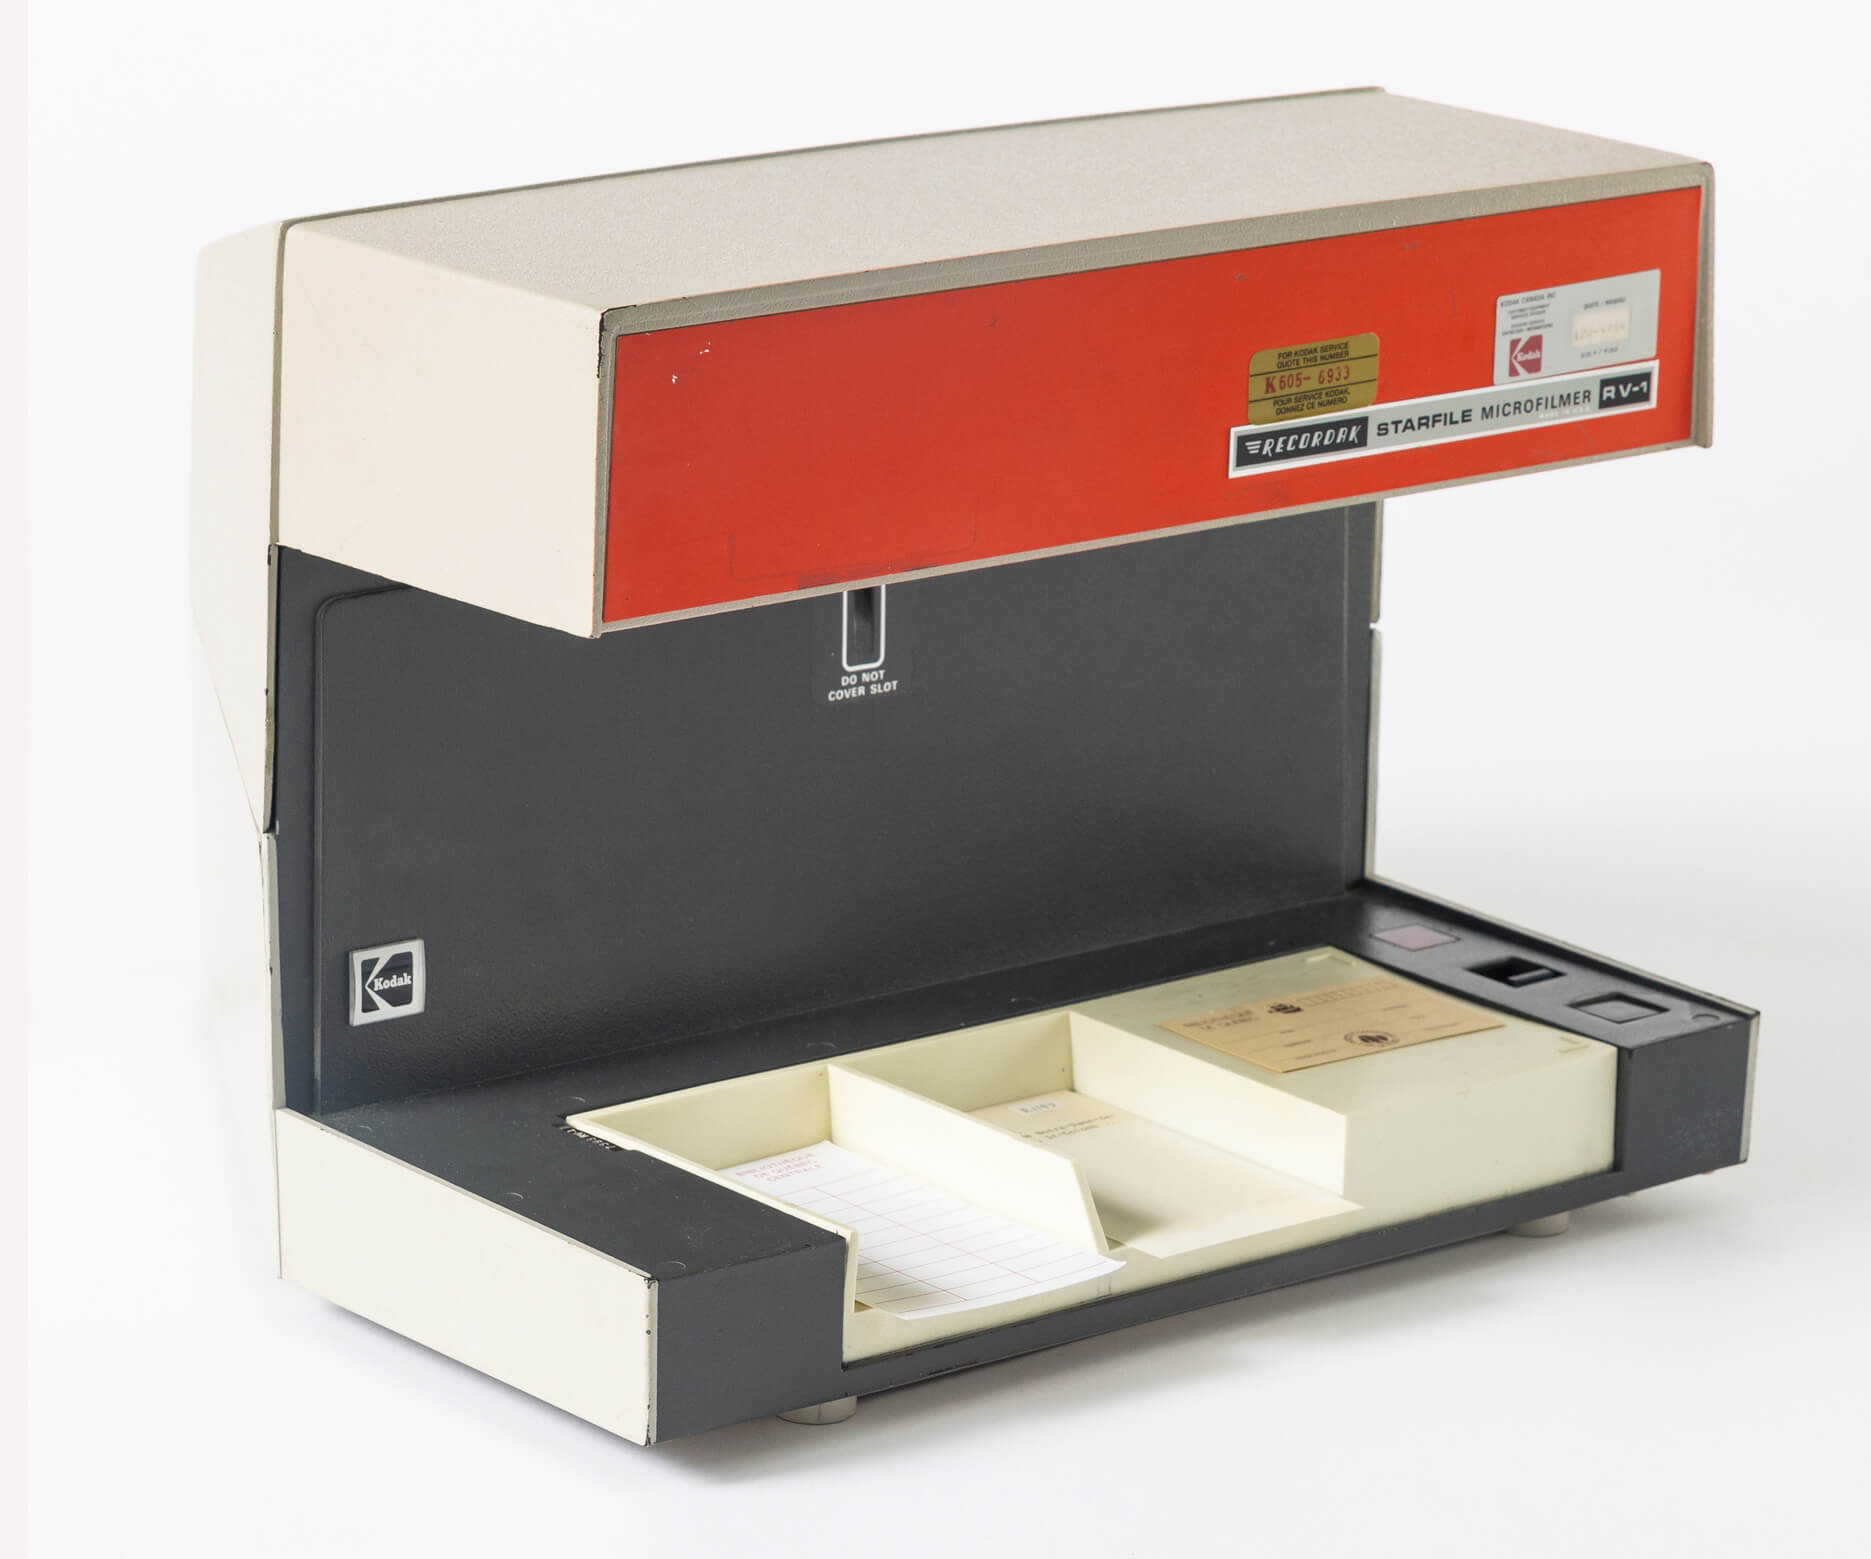 Machine Recordak utilisée dans les années 1970-1980. Photo : Hélène Bouffard, collection de L’ICQ